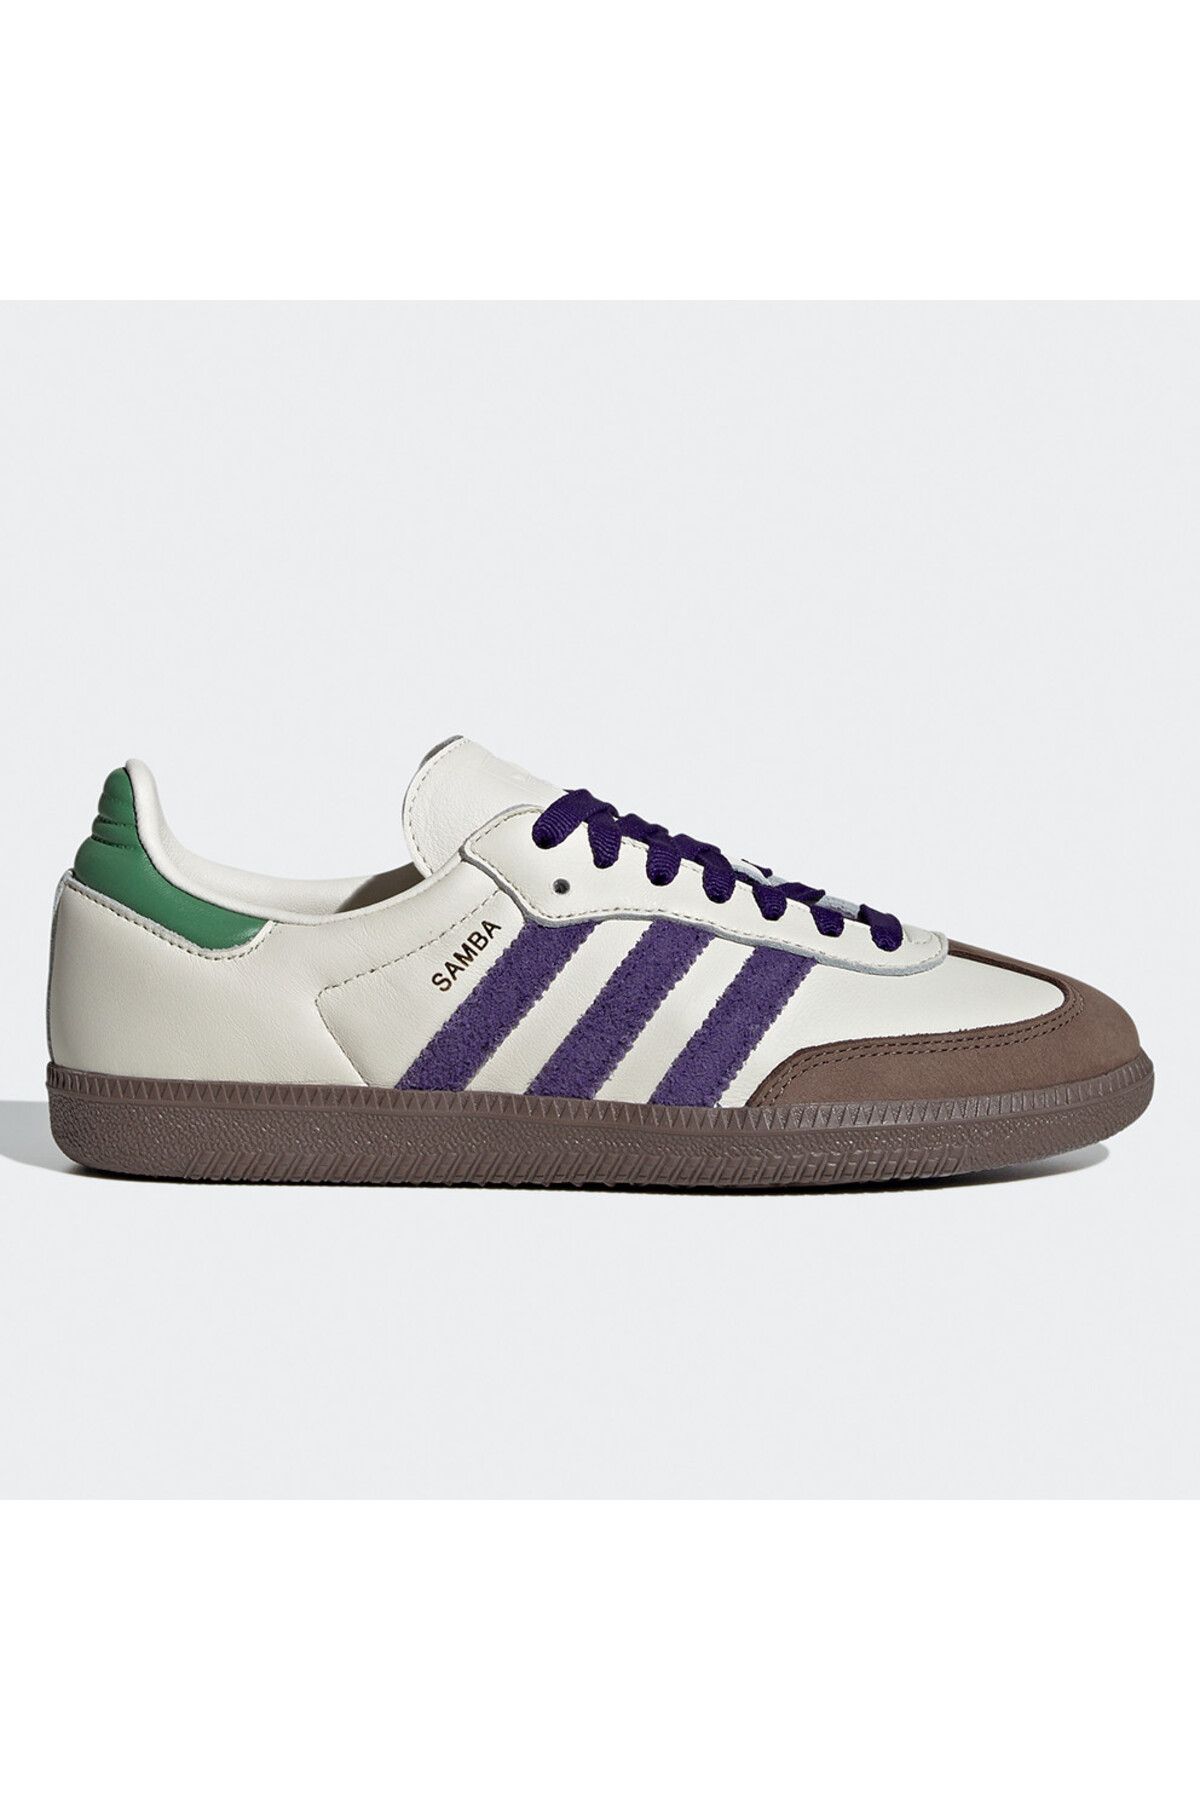 adidas Women's Samba OG Shoes - White /Purple Kadın Spor Ayakkabı